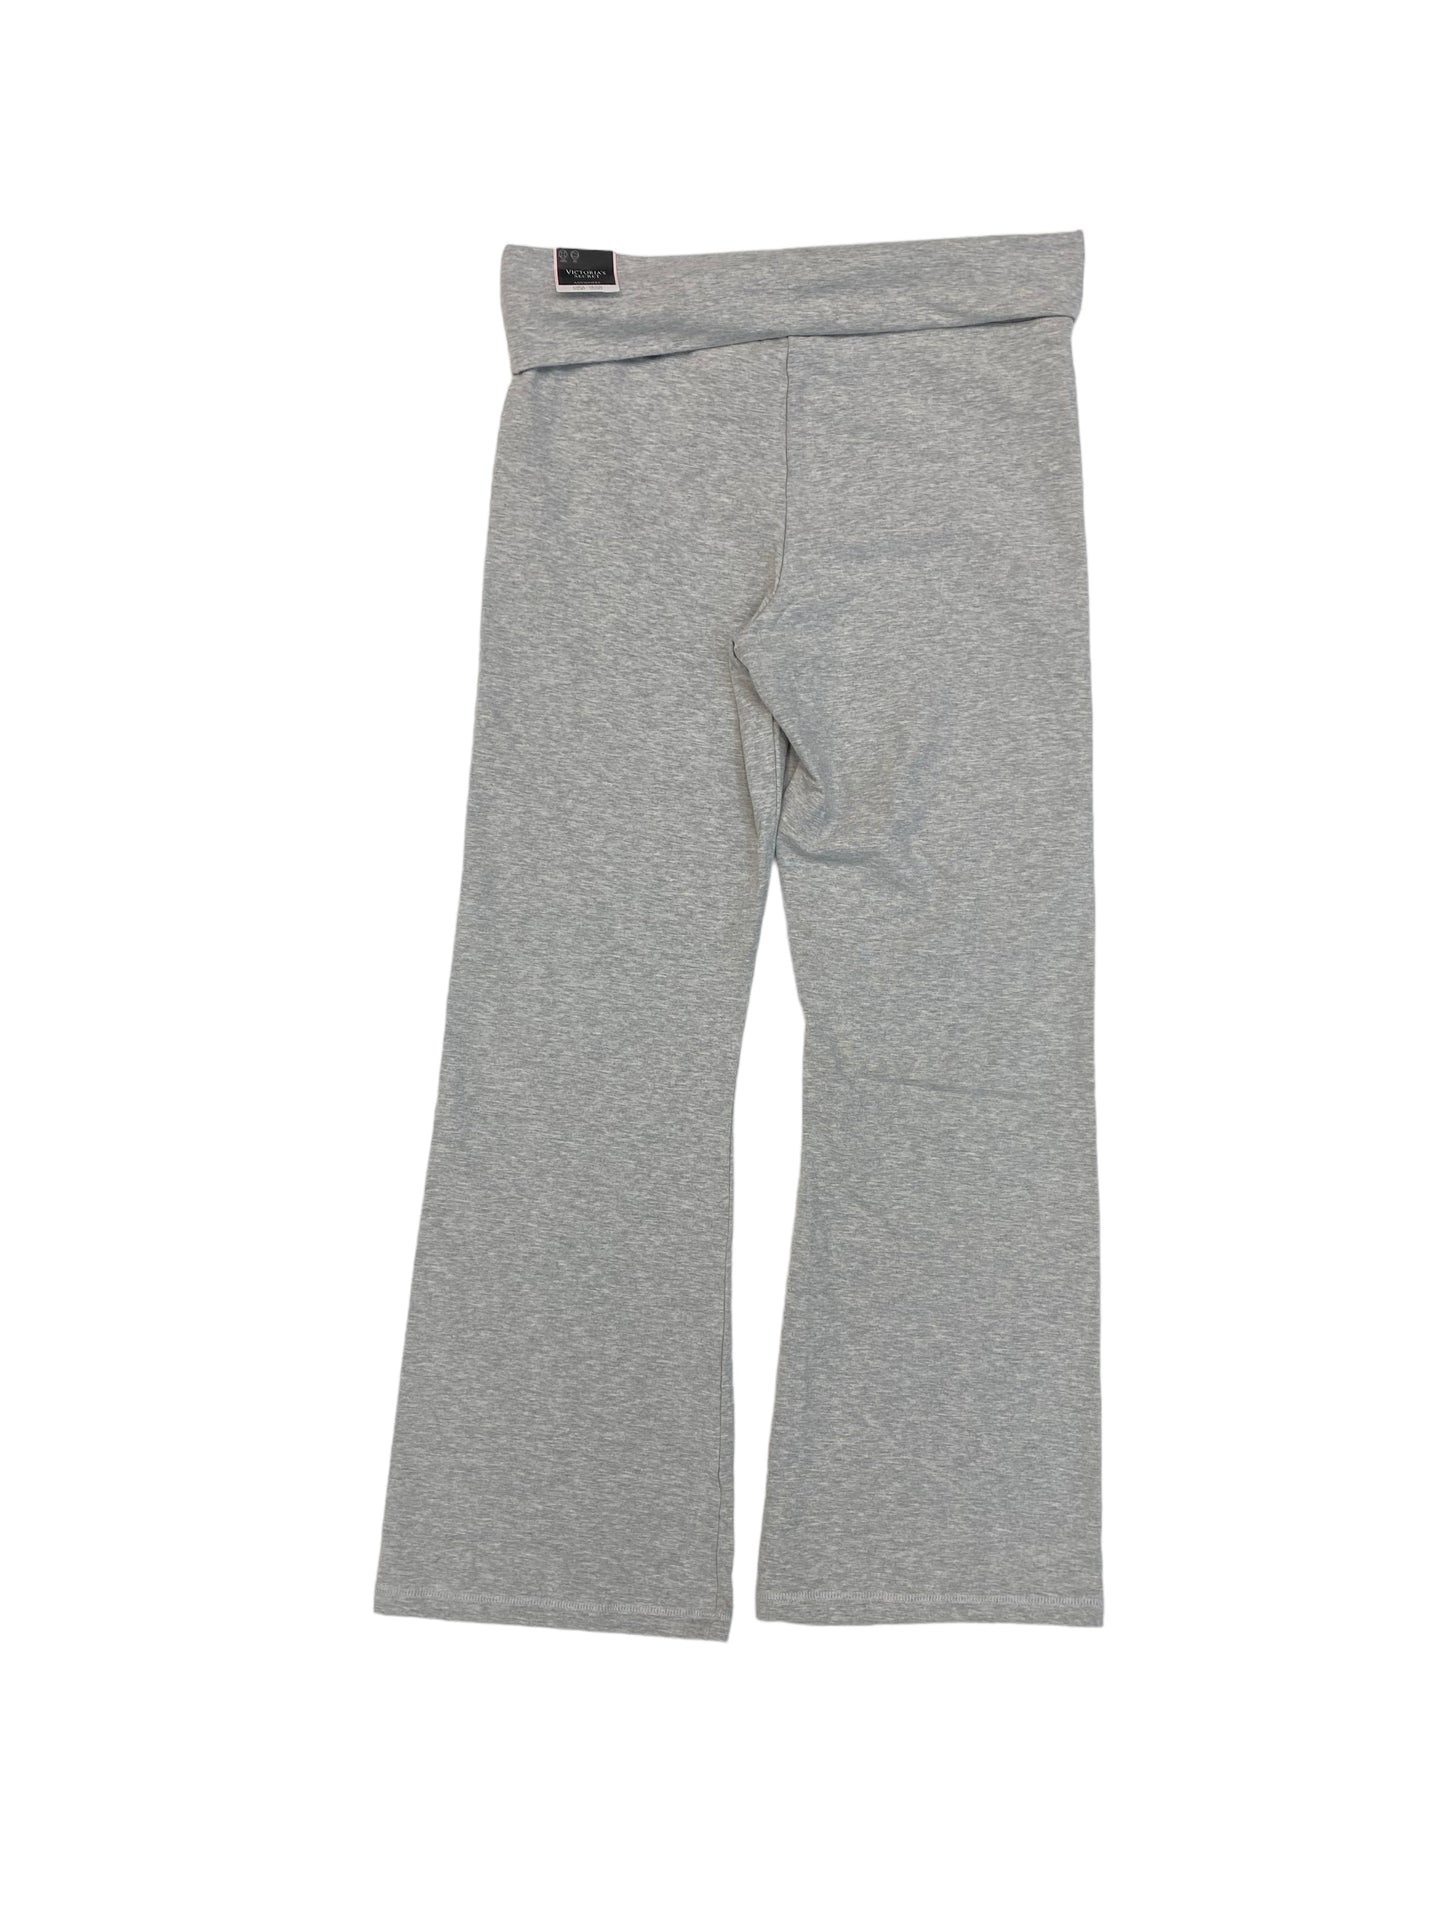 Grey Athletic Pants Victorias Secret, Size L